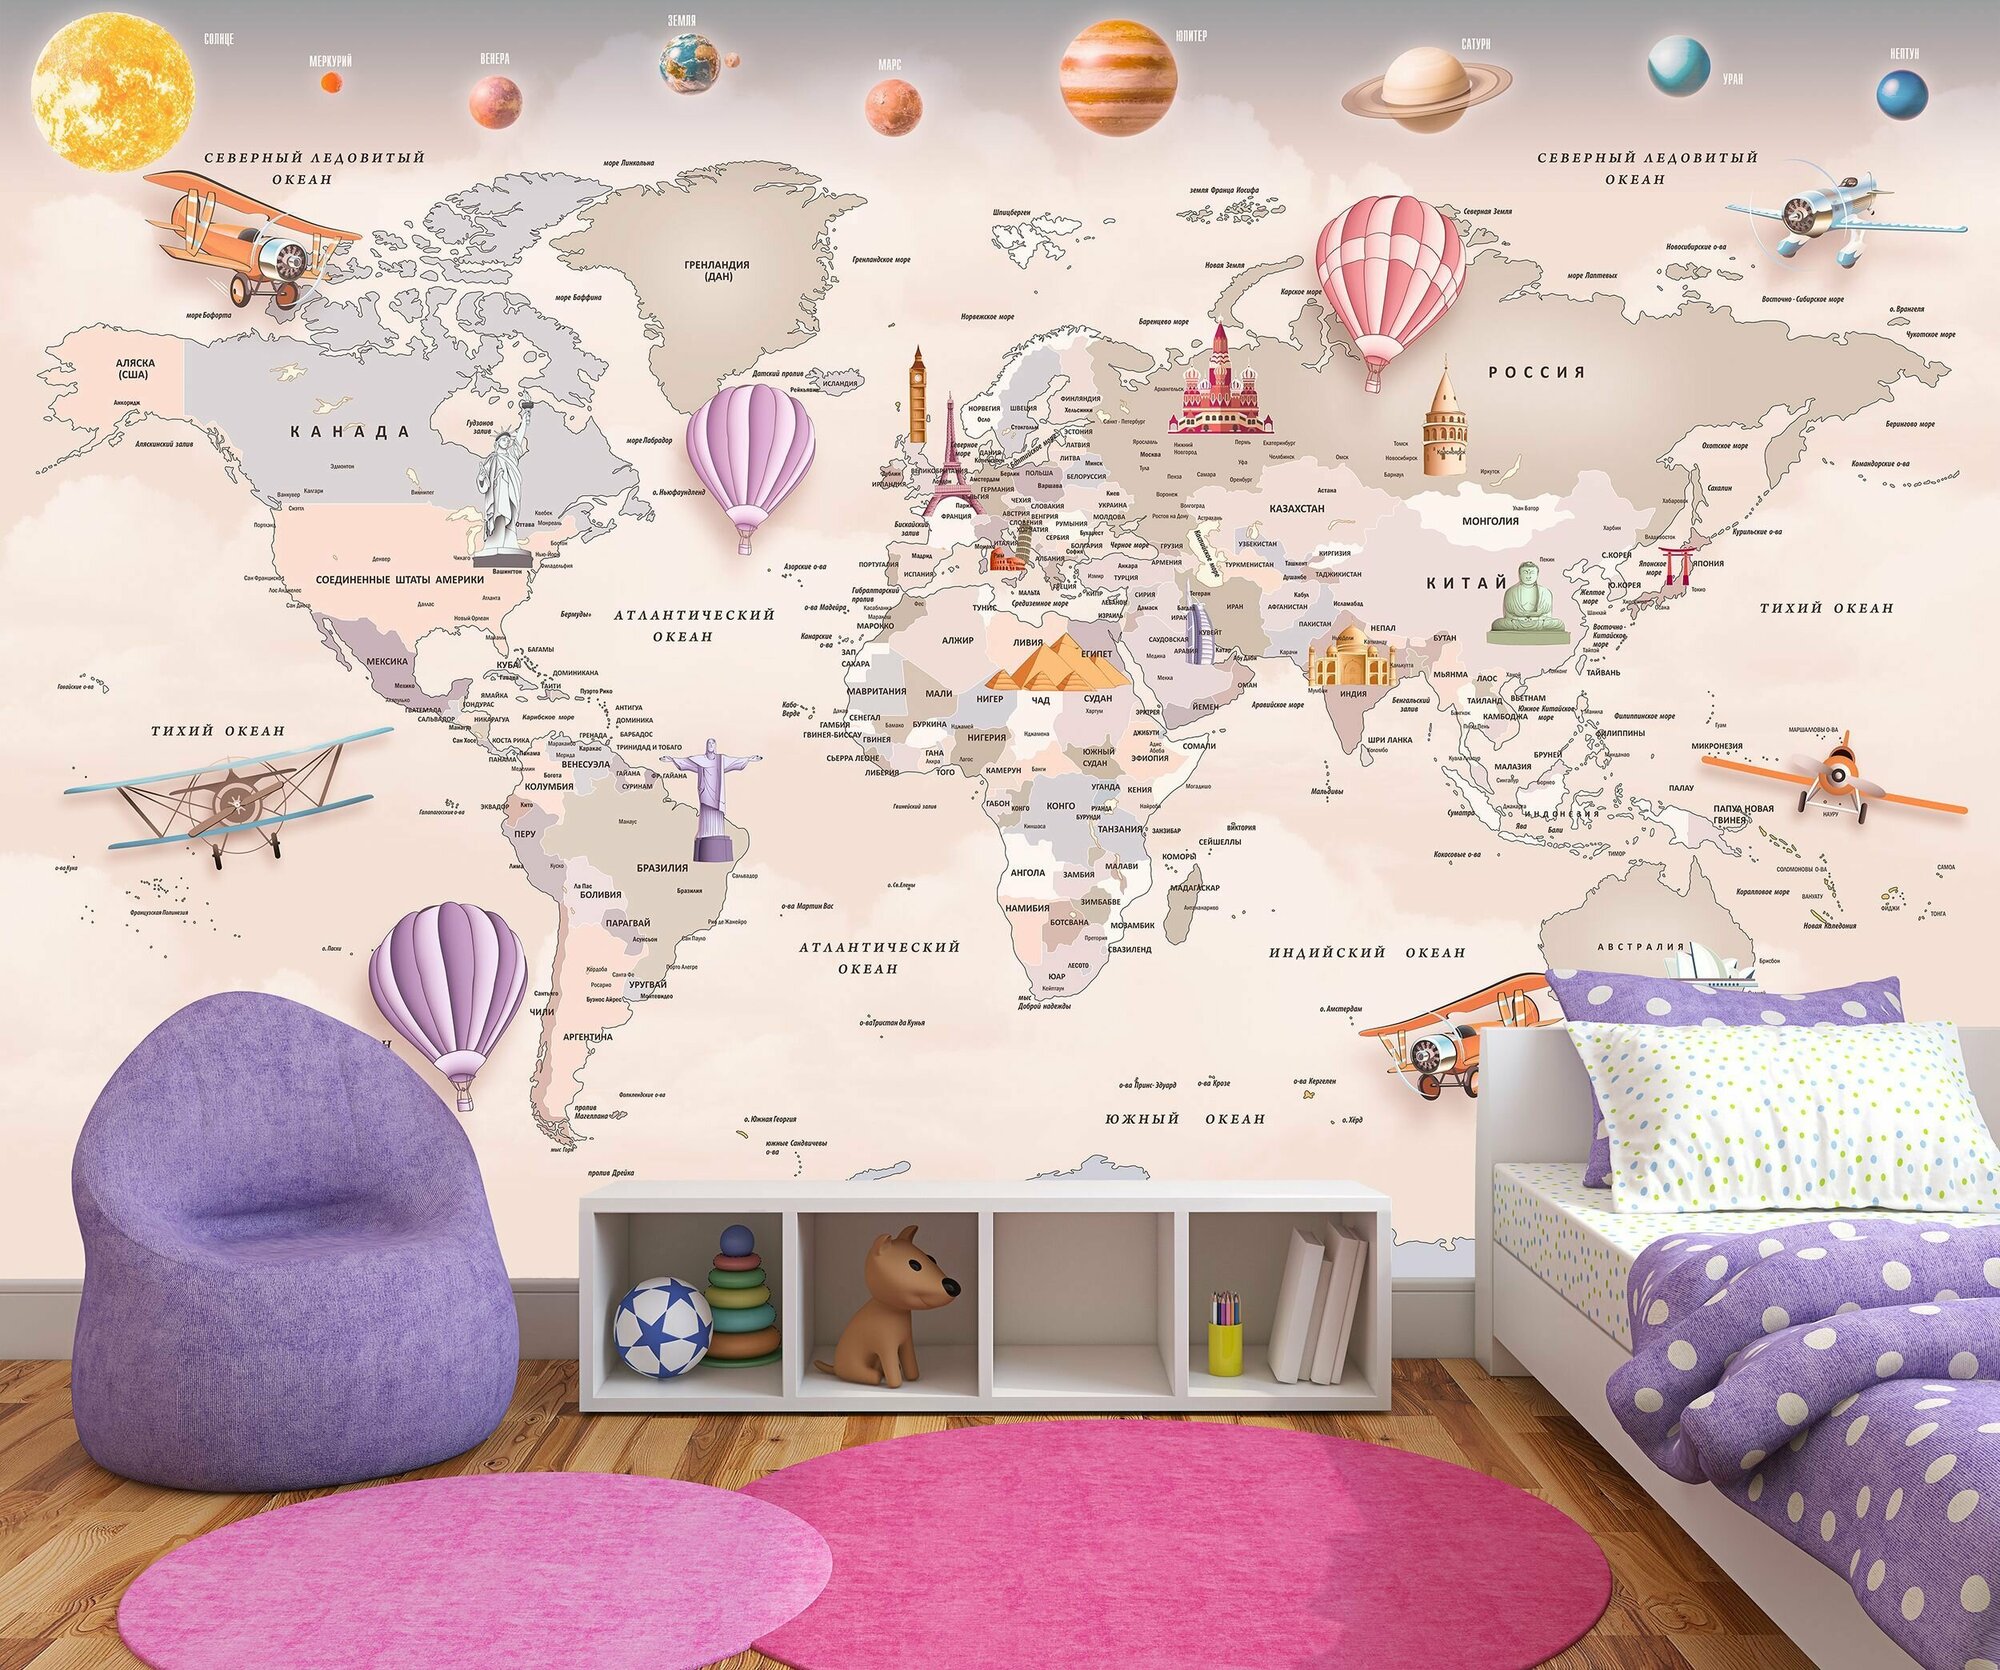 Фотообои флизелиновые 150х100см. на стену. Серия MAPS ARTDELUXE. 3д детская карта мира и планеты. Обои дизайнерские эксклюзивные для детской комнаты.